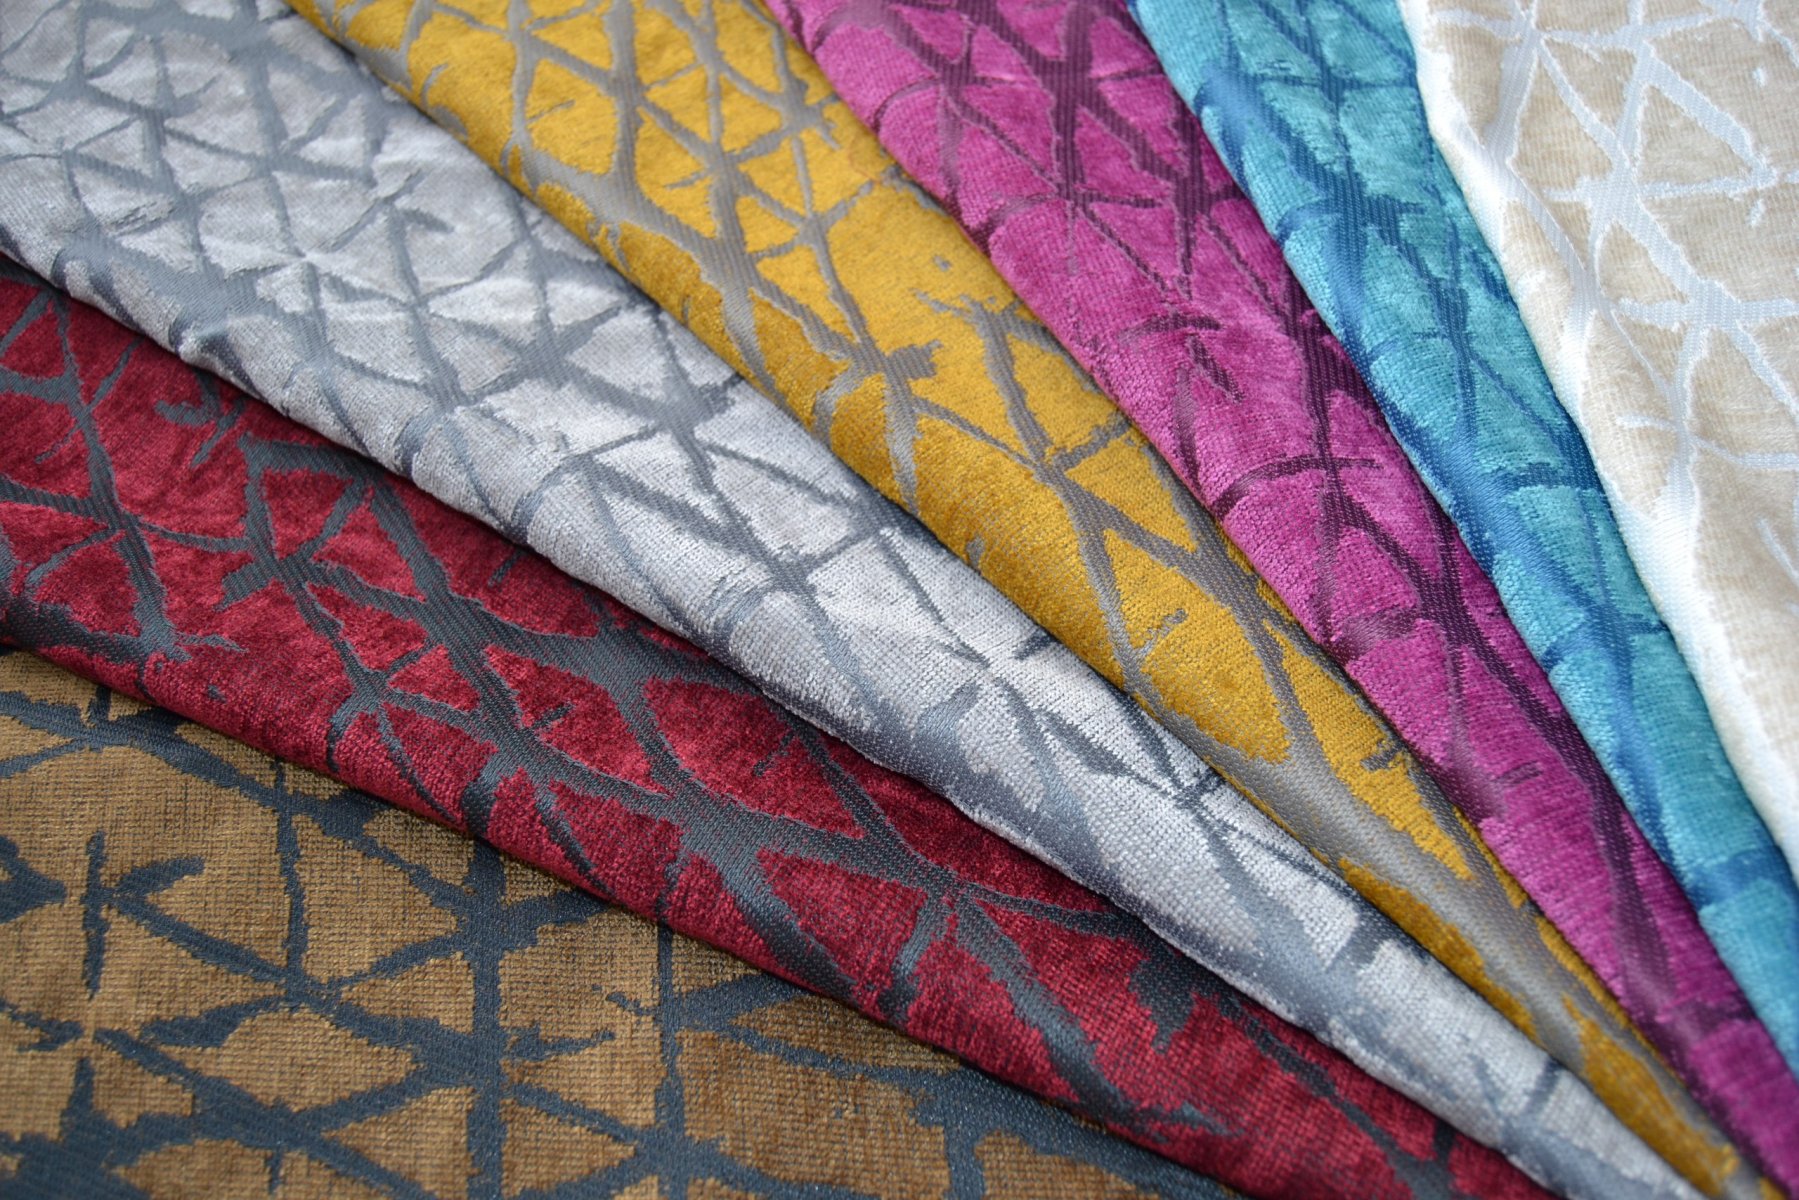 Ткань сатен: шелковистая, высокой плотности, отзывы, какой материал лучше